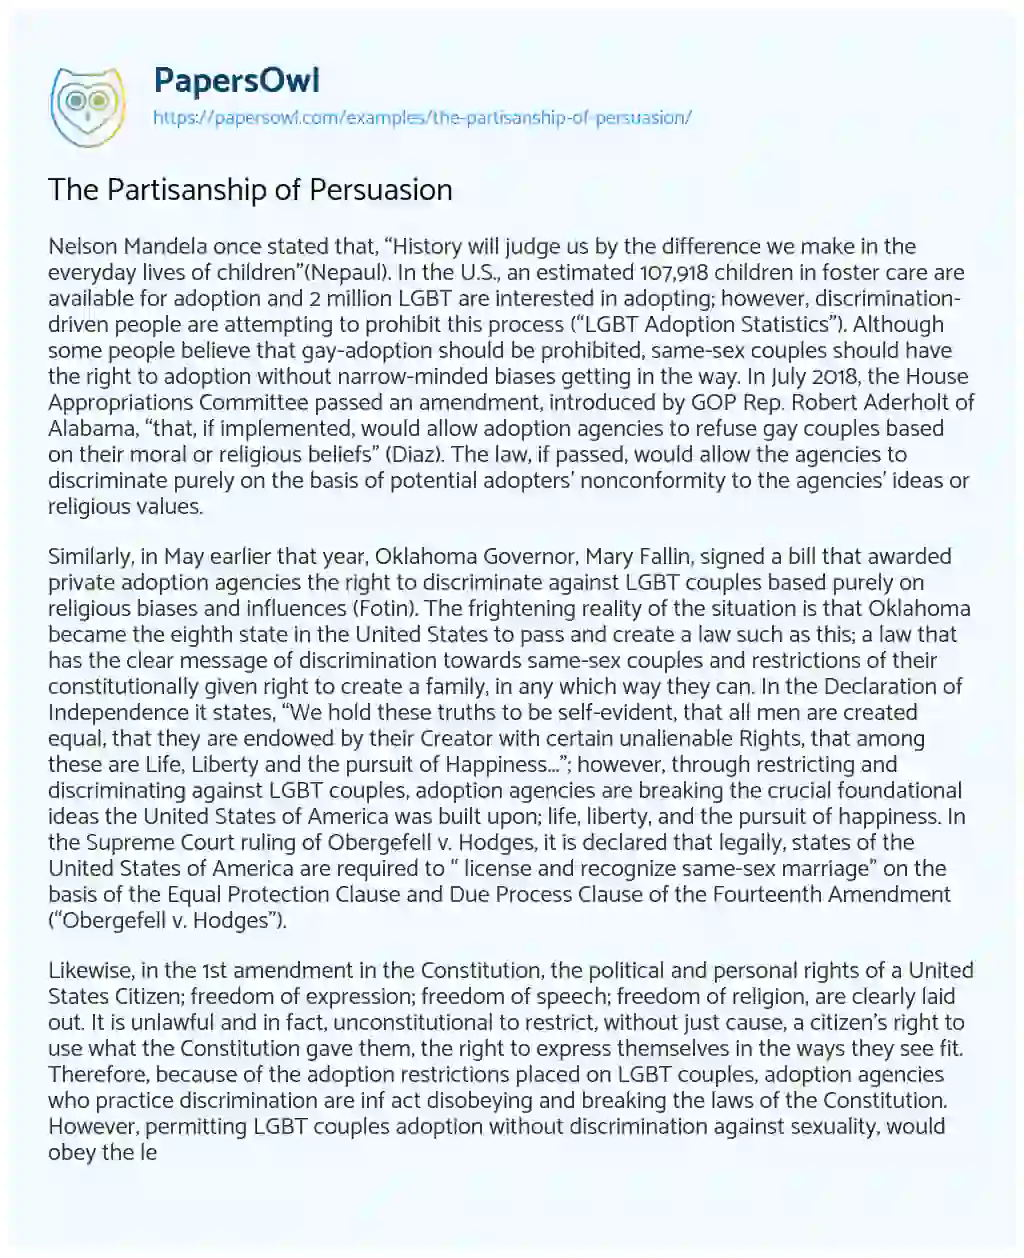 The Partisanship of Persuasion essay